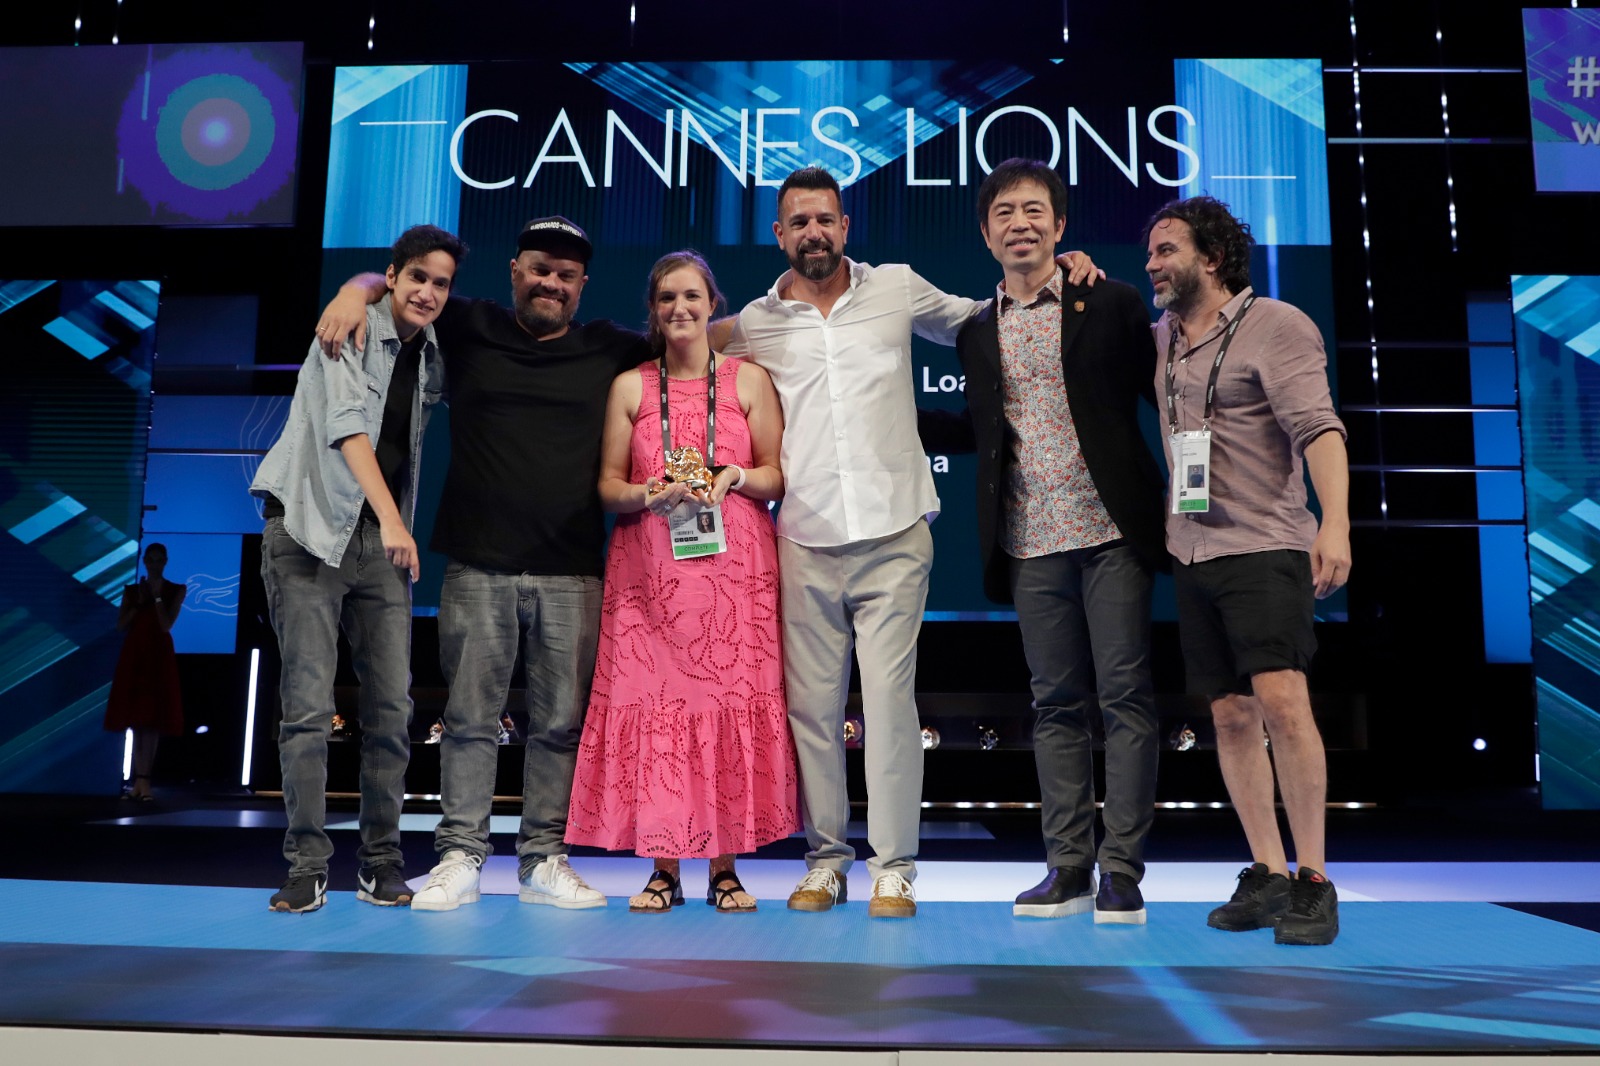 Circus Grey Perú multipremiada en Cannes Lions 2022 con la campaña “The Emancipation Loan”